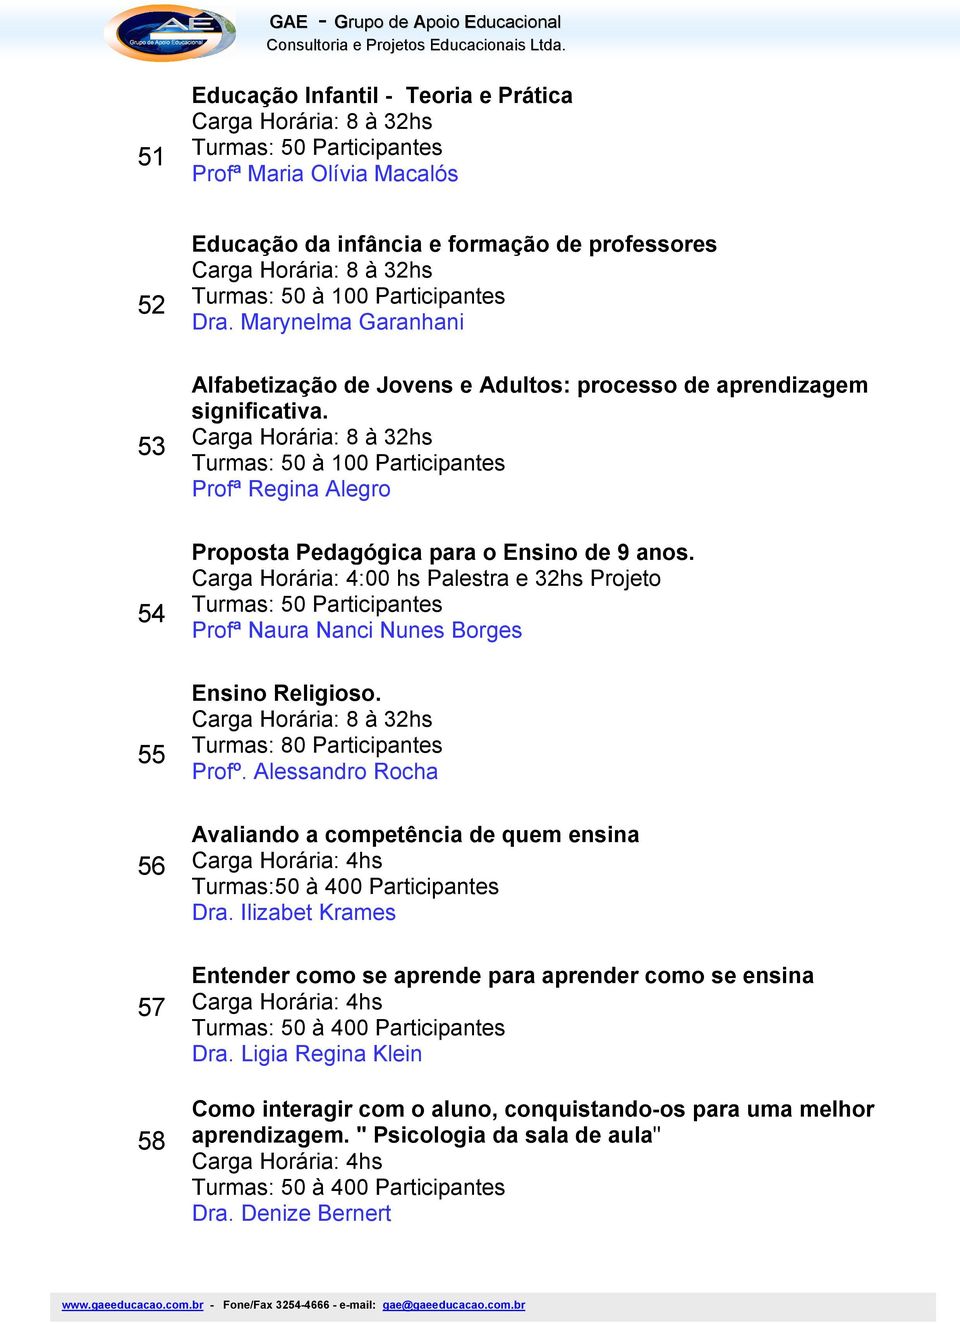 Carga Horária: 4:00 hs Palestra e 32hs Projeto Profª Naura Nanci Nunes Borges Ensino Religioso. Turmas: 80 Participantes Profº.